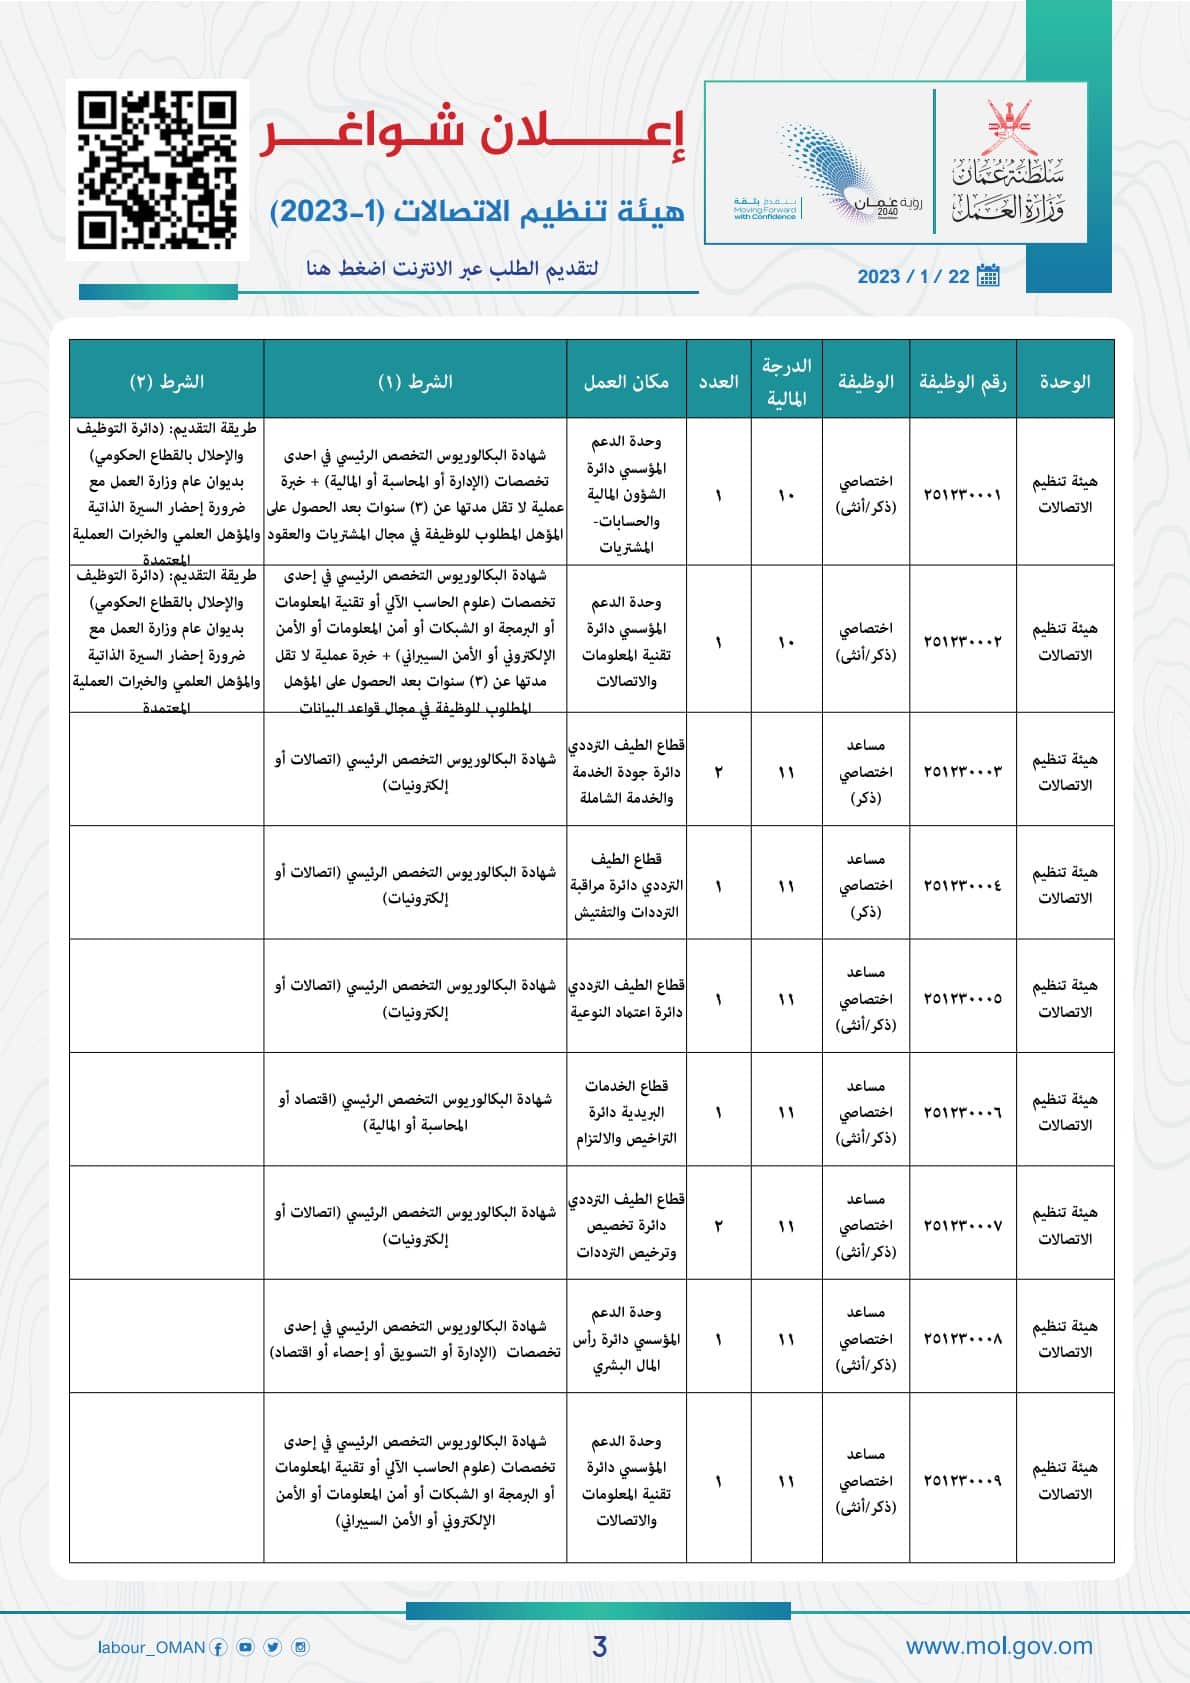 وزارة العمل في سلطنة عمان توفر وظائف شاغرة لدي هيئة تنظيم الاتصالات